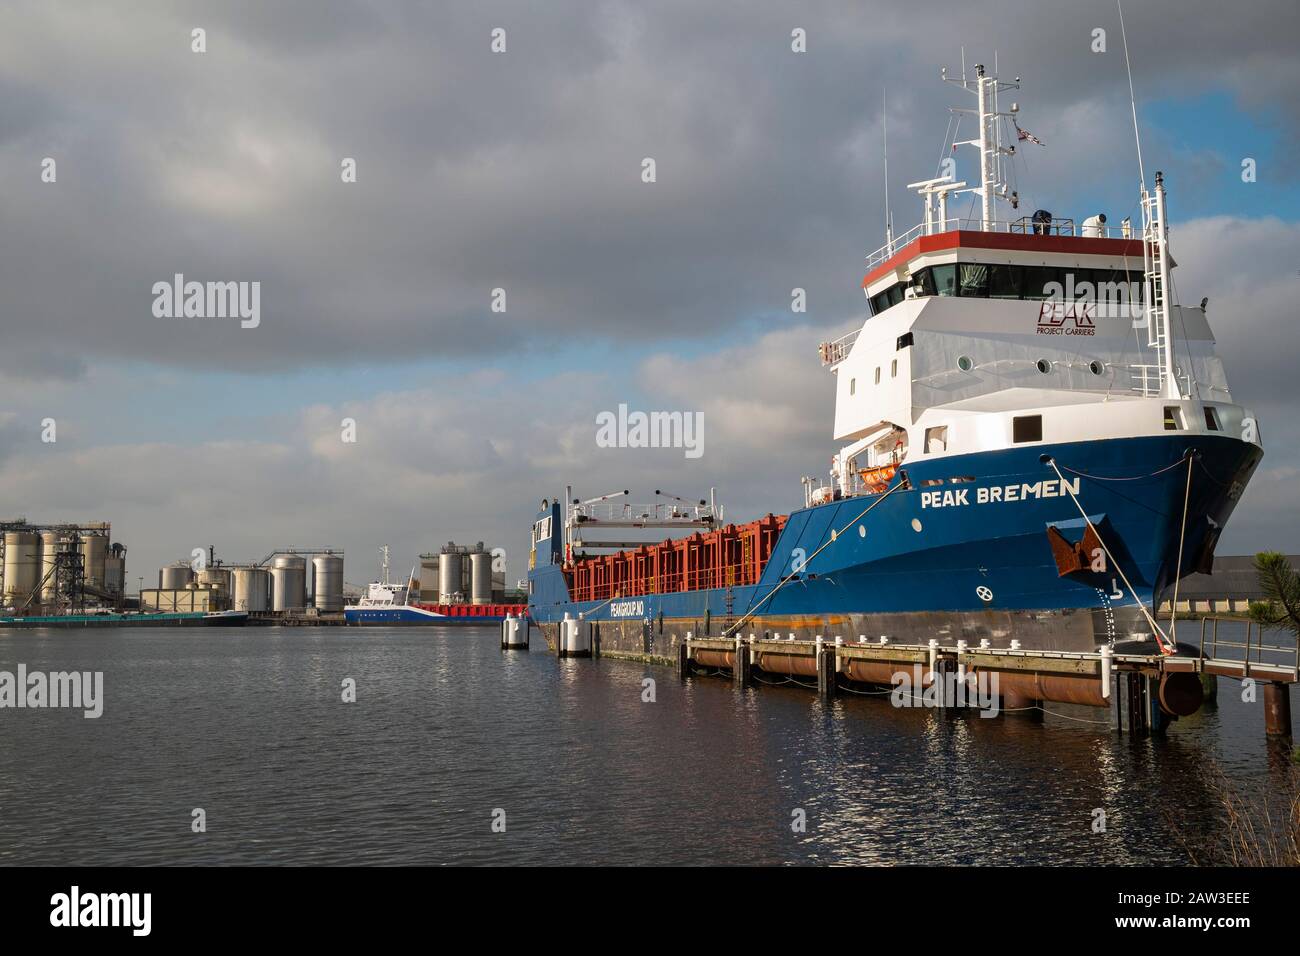 Peak Bremen, una nave da carico generale che naviga sotto la bandiera dei Paesi Bassi, ormeggiata nel porto di Amsterdam. Foto Stock